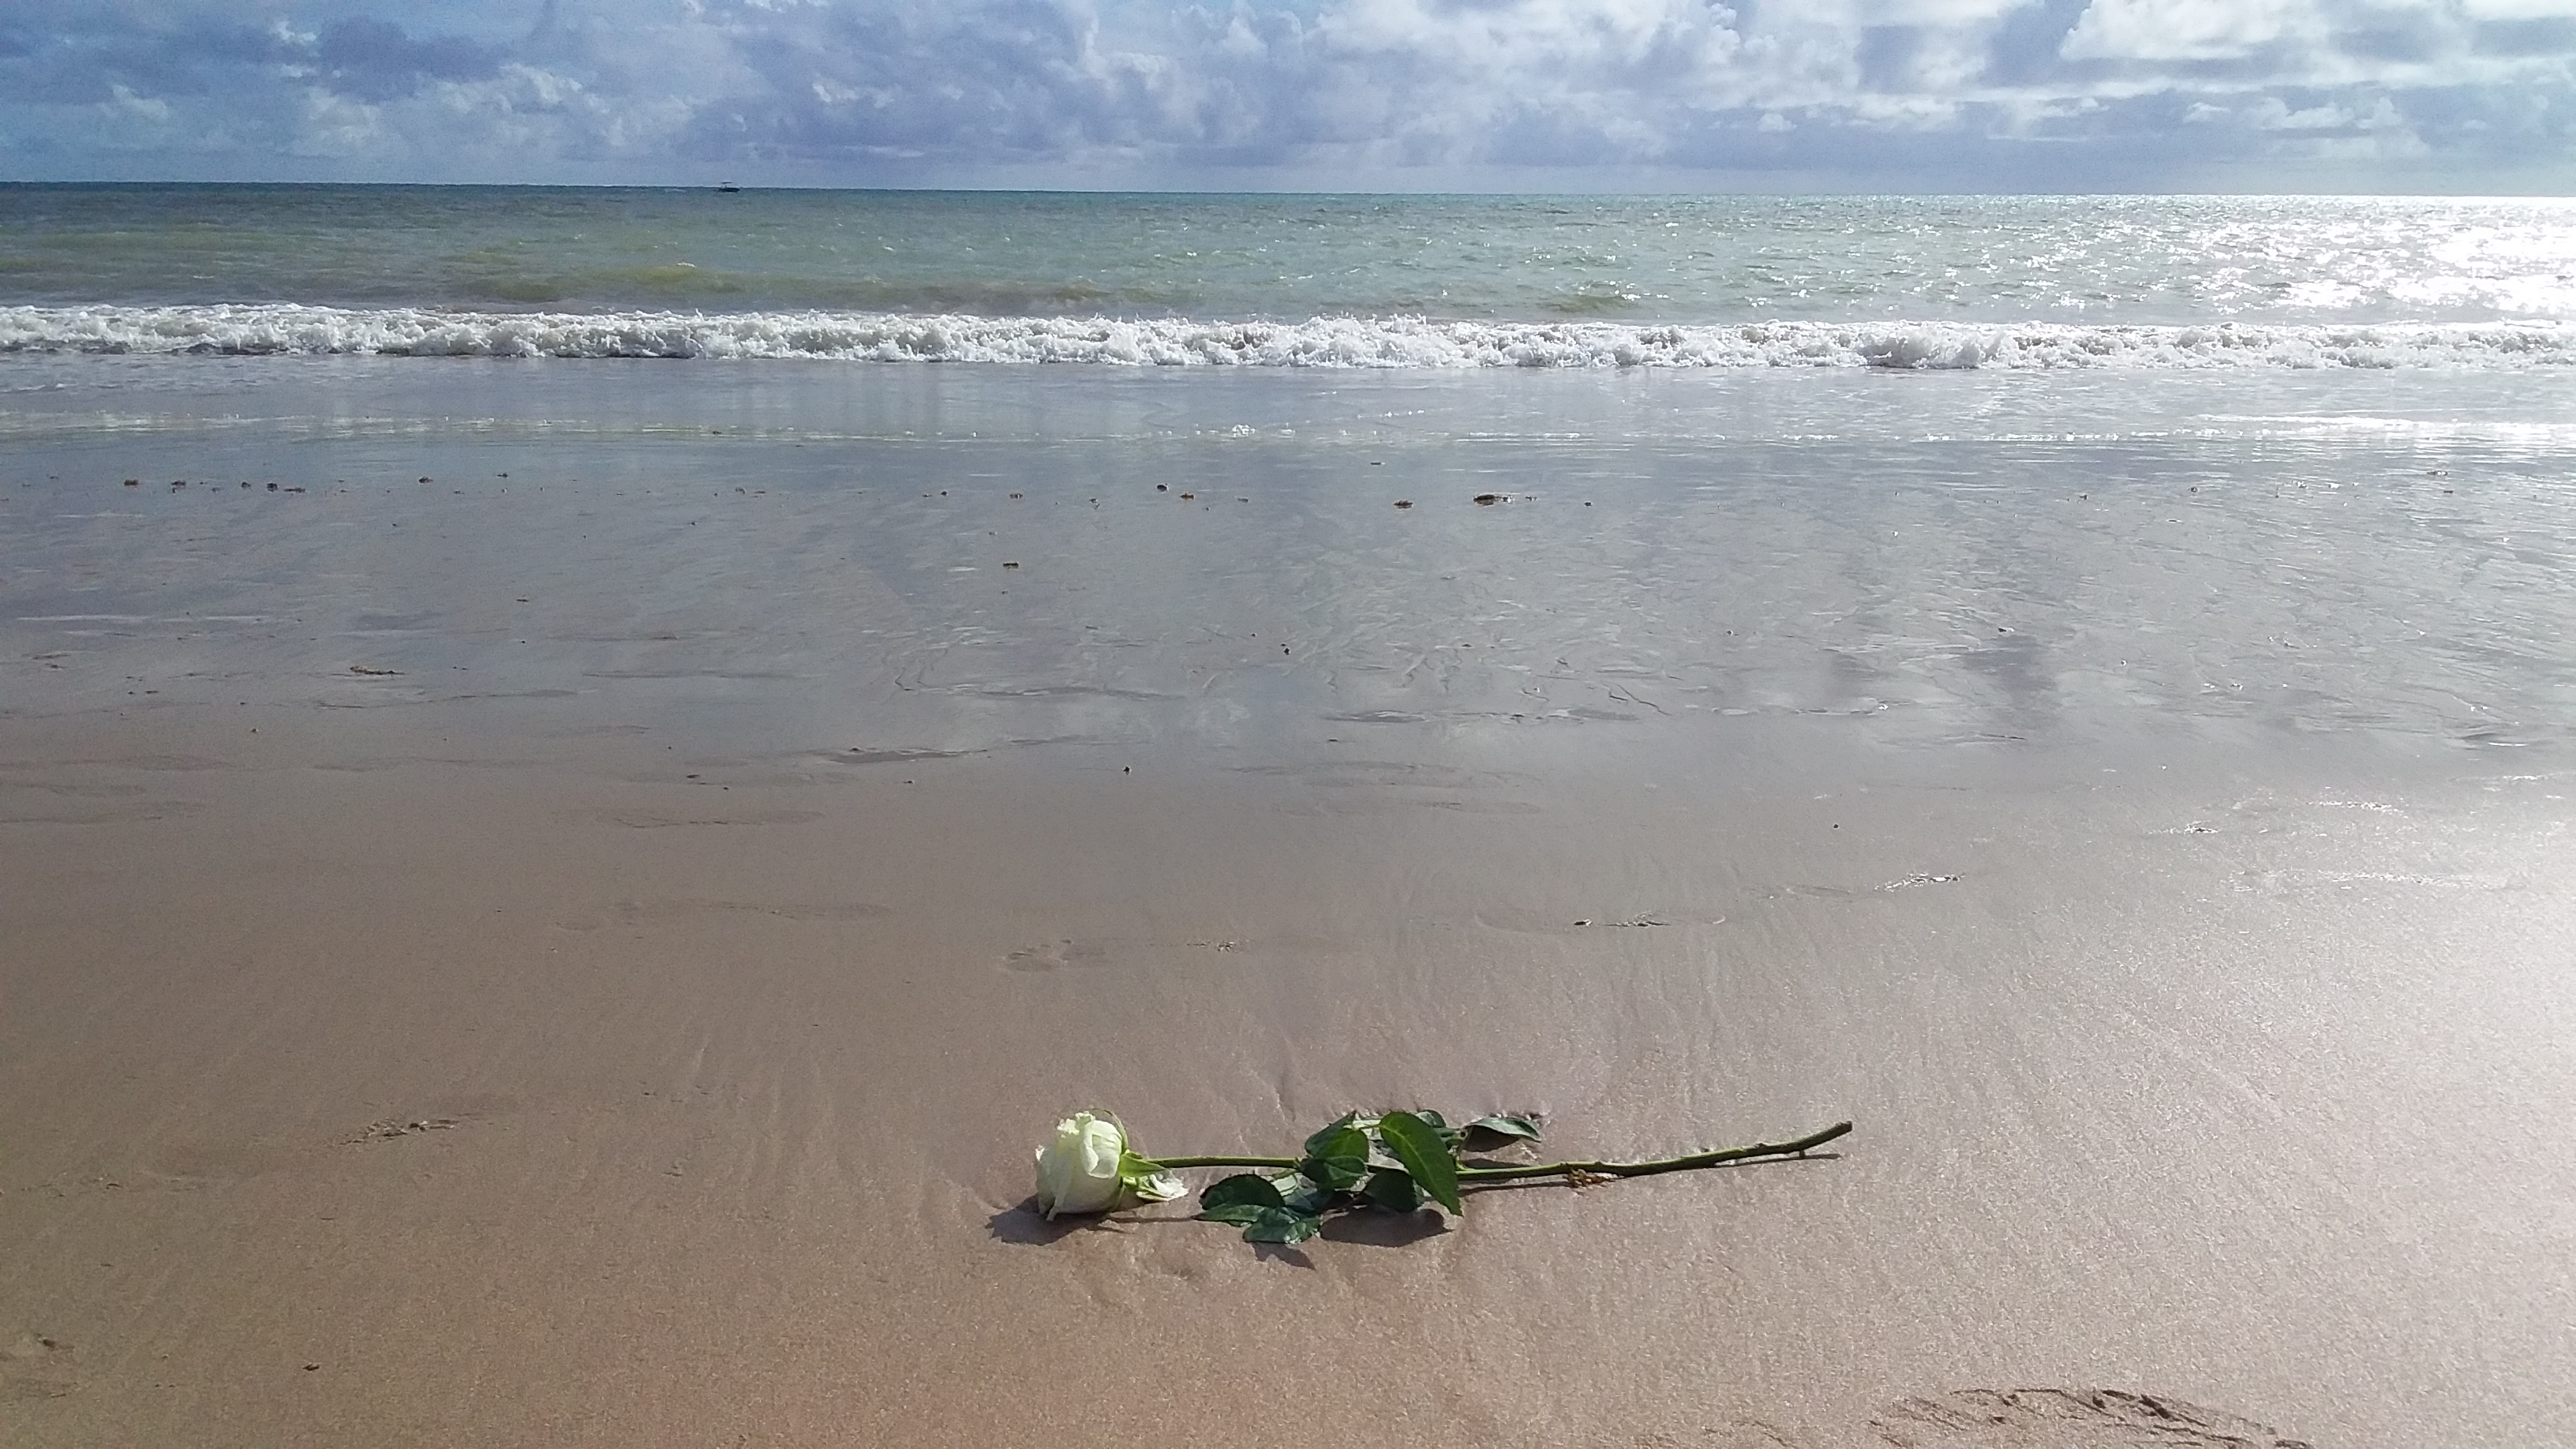 Descrição: este registro fotográfico foi realizado na manhã do dia 08 de dezembro de 2019. Na fotografia, vemos uma rosa branca, oferenda para Iemanjá, na areia da Praia do Cabo Branco em João Pessoa-PB, ao fundo vemos o mar com tons verde e azul escuro.